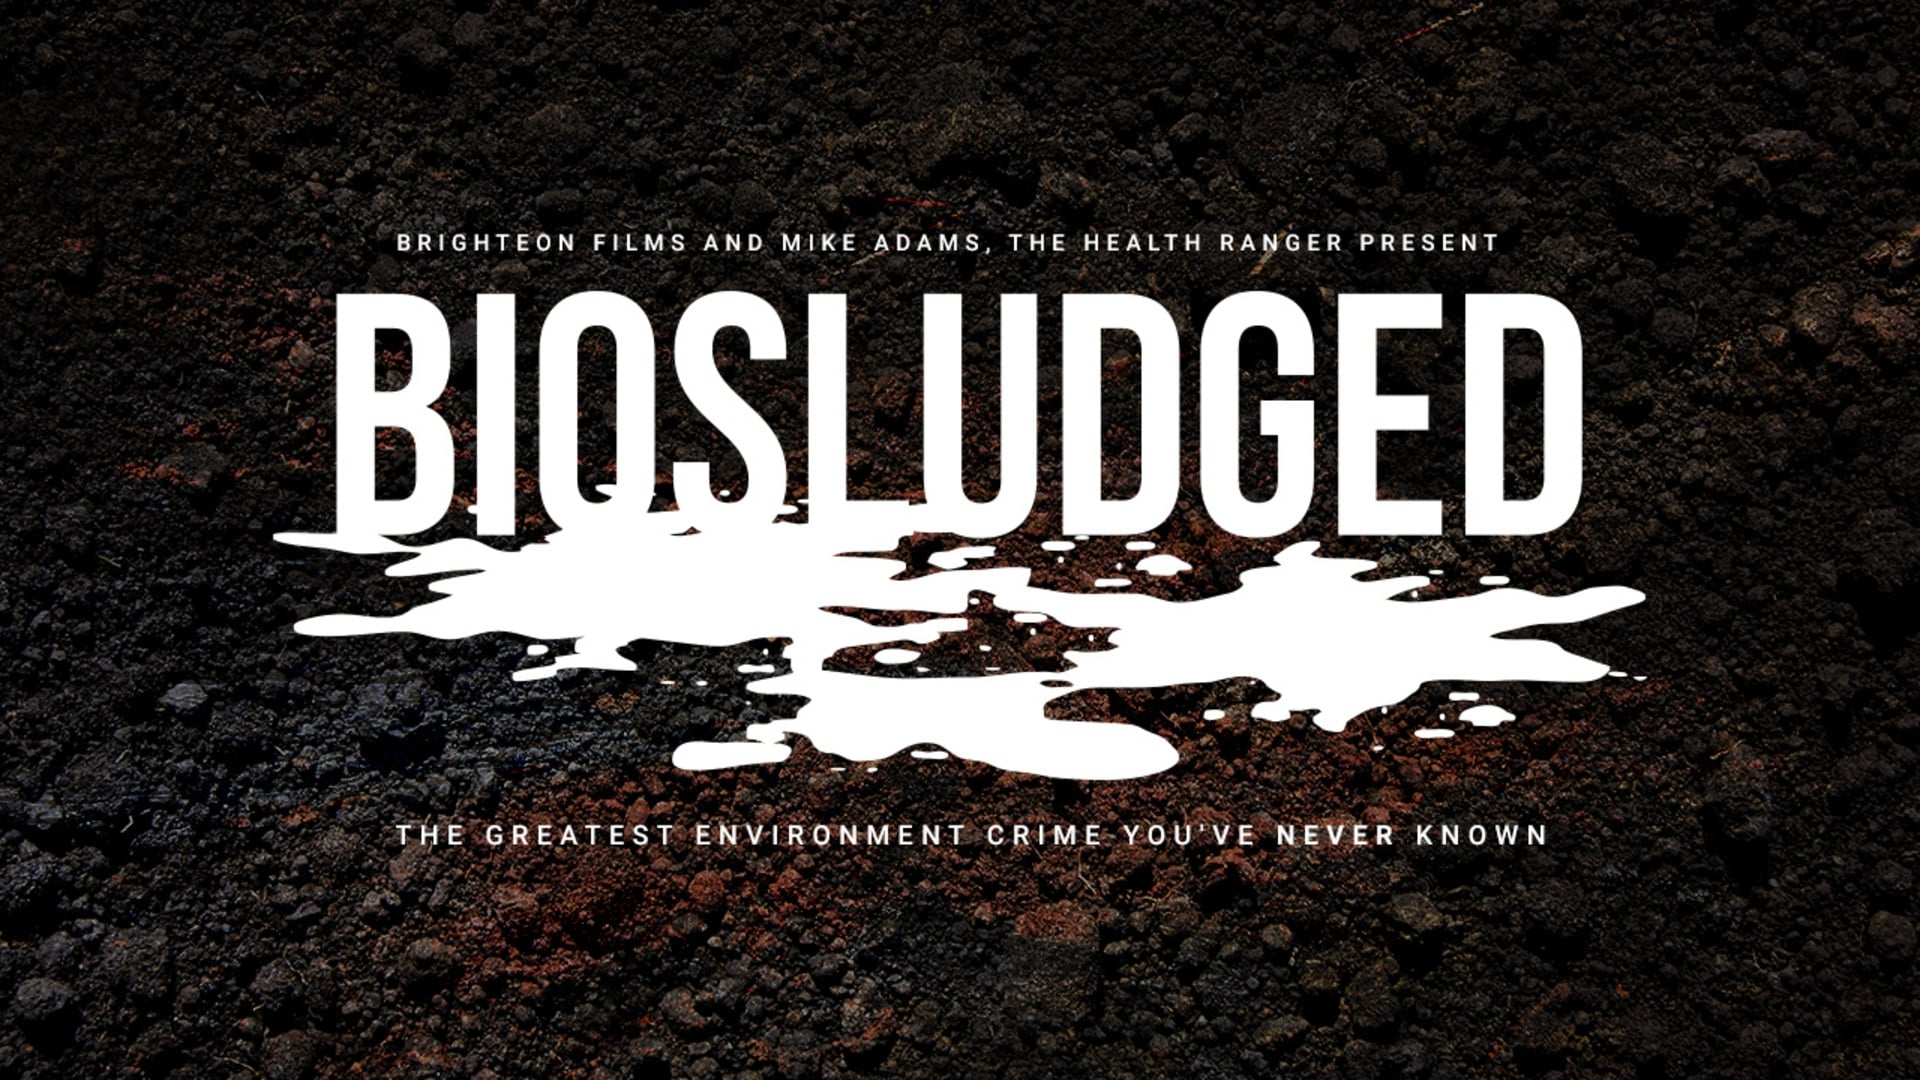 Biosludged (2018)